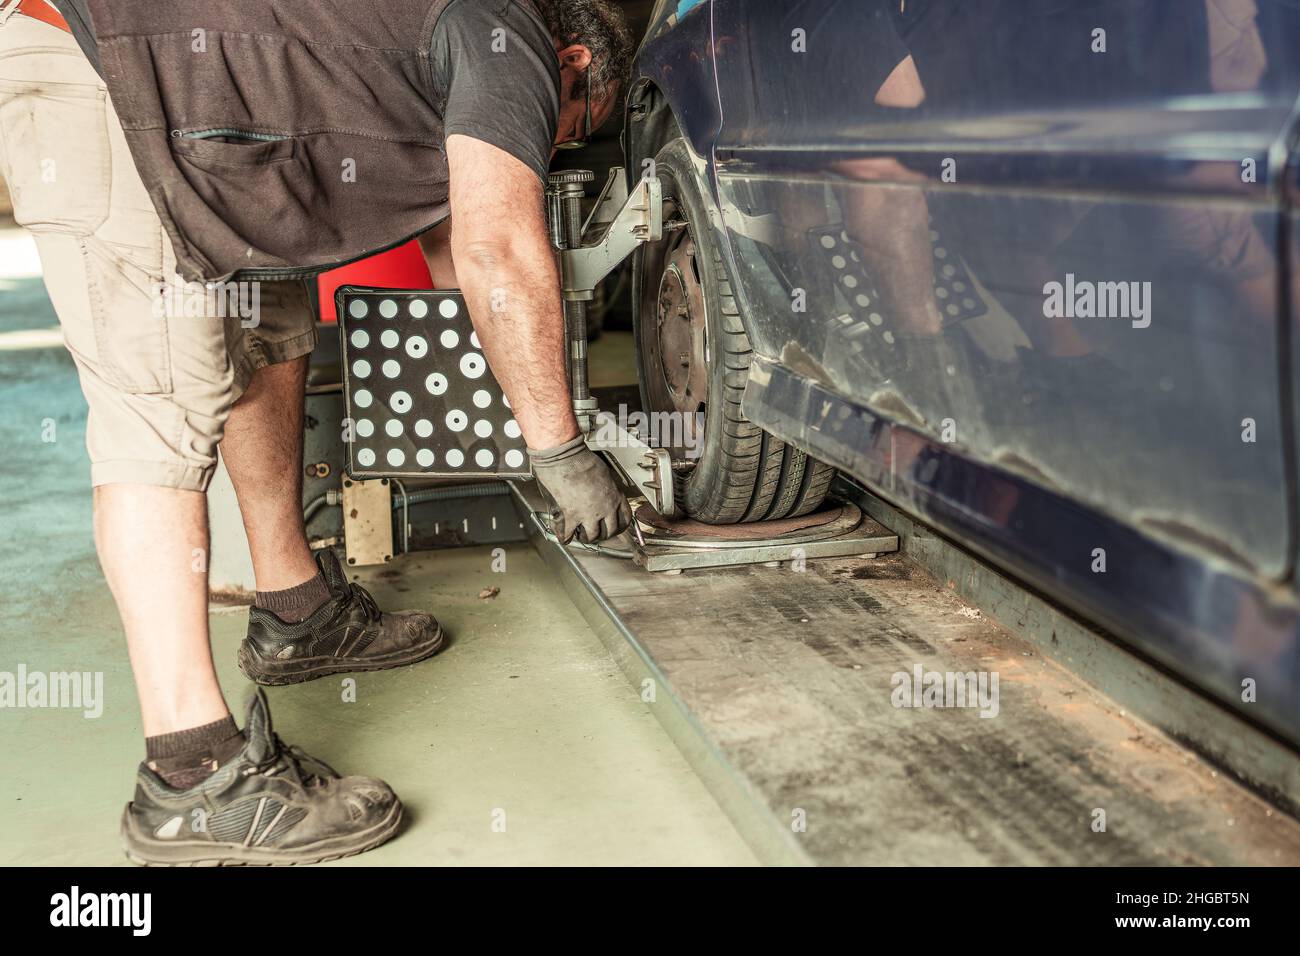 Un mécanicien s'est enroulée pour aligner la direction d'une voiture soulevée par un cric dans un garage Banque D'Images